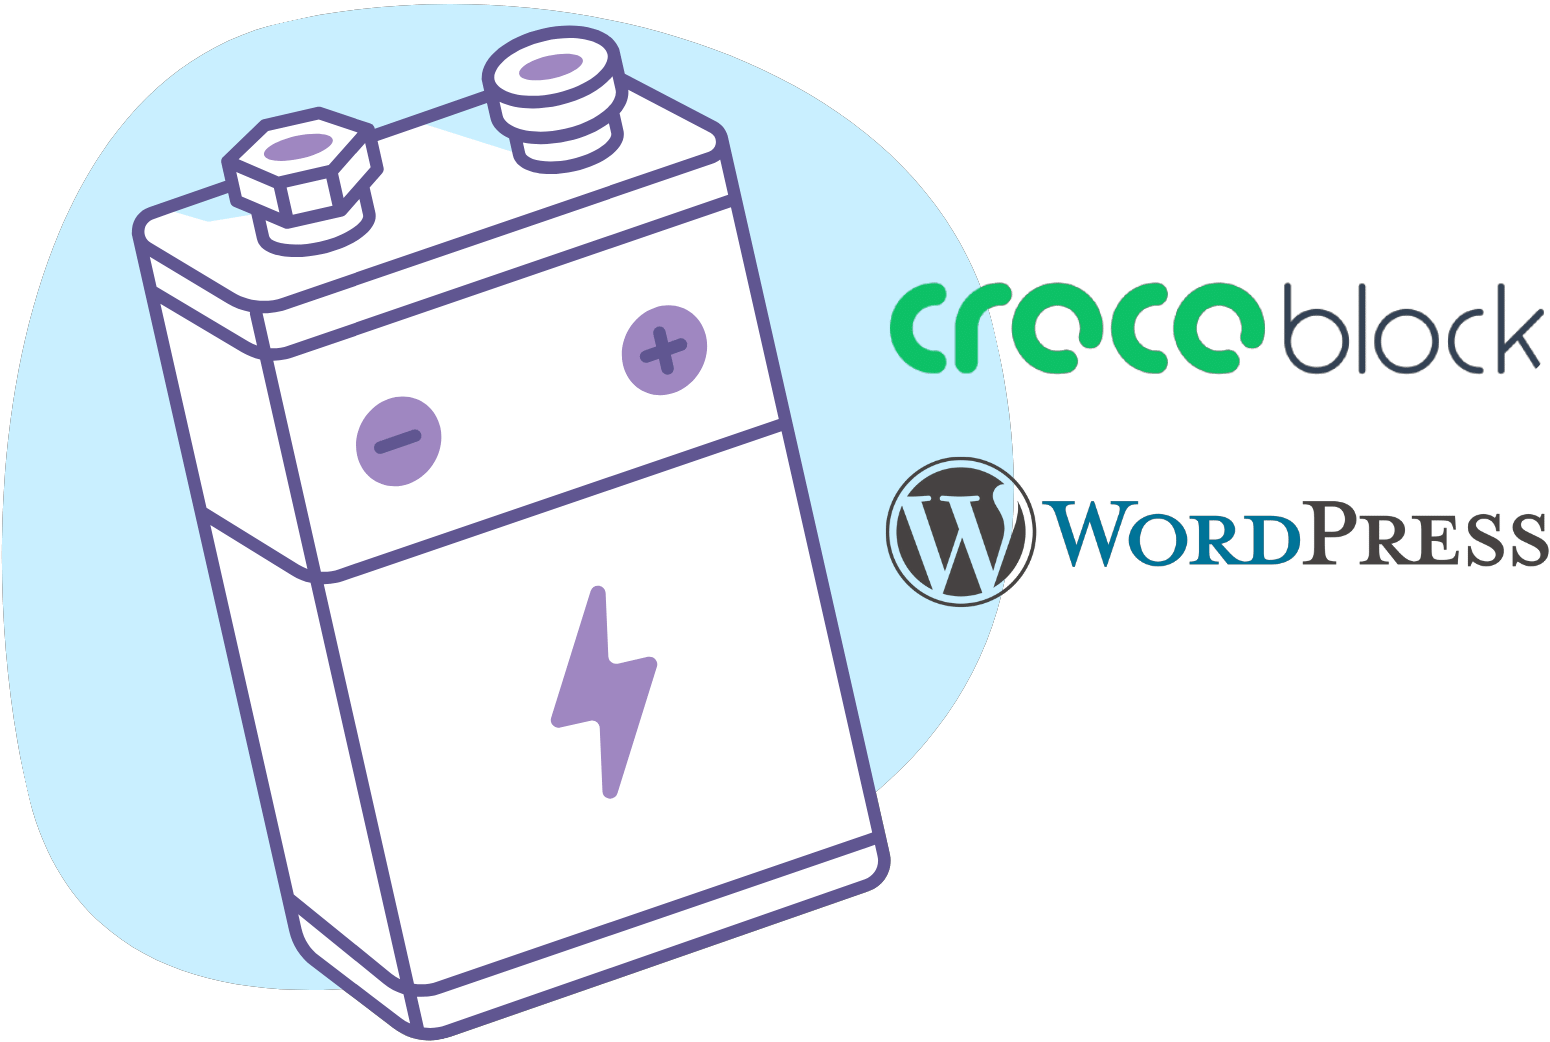 Crocoblock und WordPress Webdesign